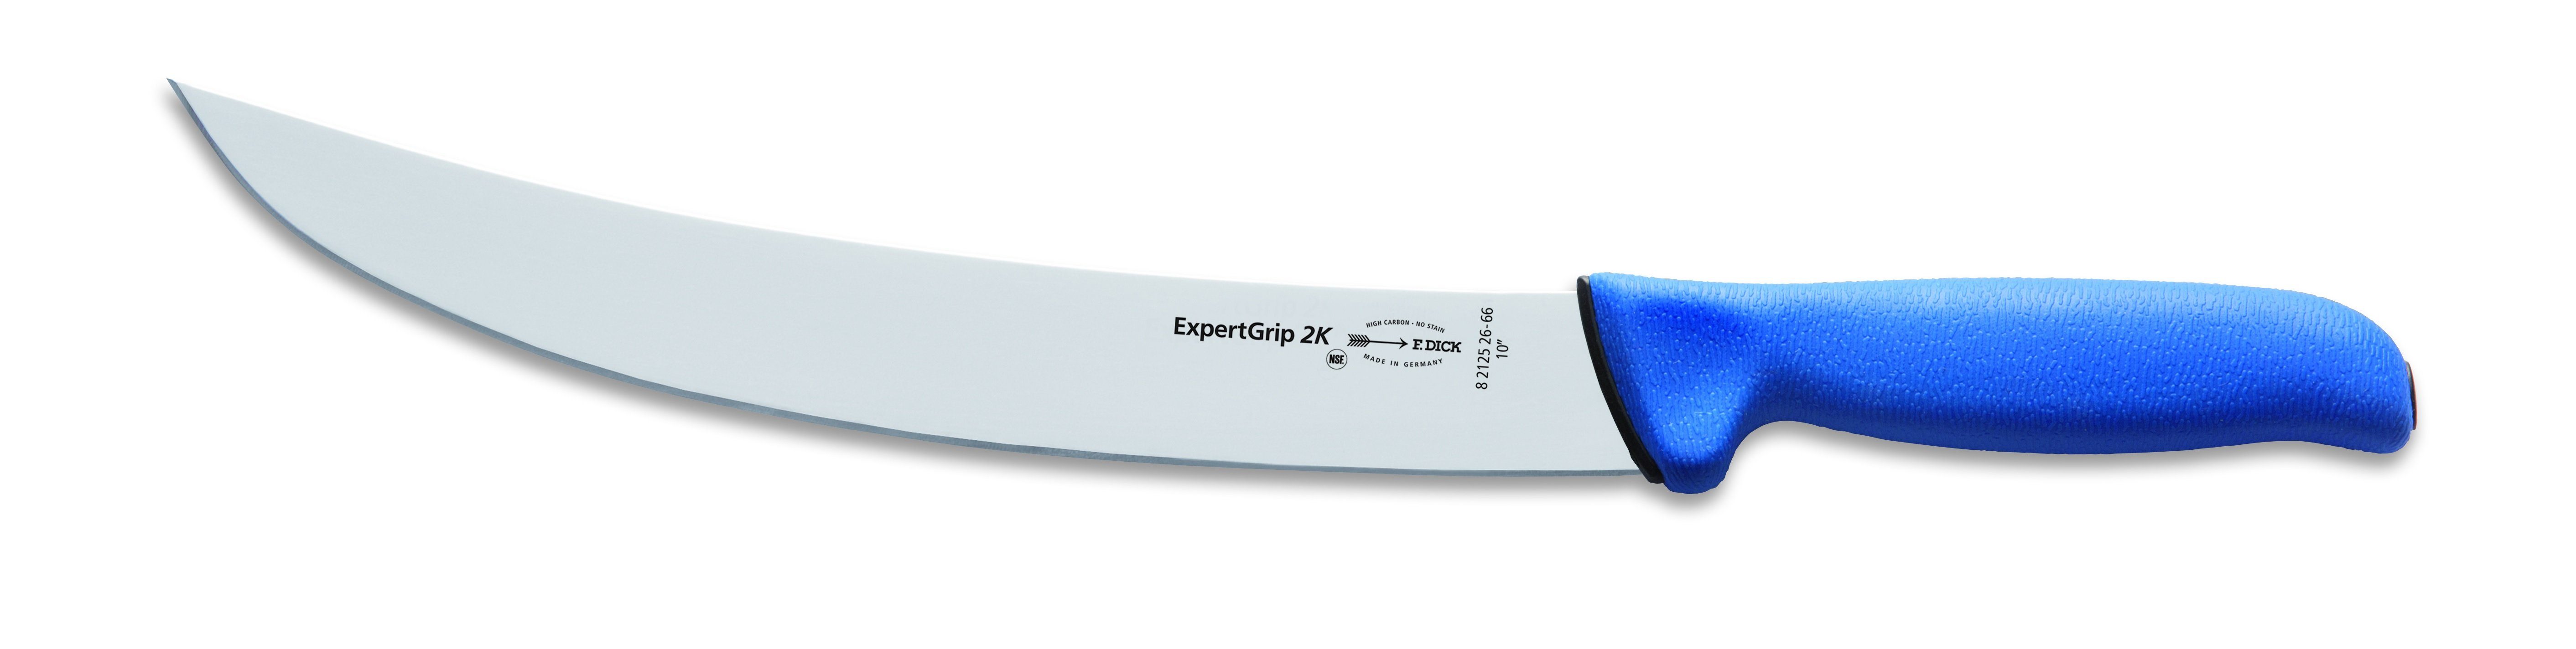 Zubereitungsmesser Expert Dick 26 cm Messer 8212526-66 Zerlegemesser Grip Dick 2K